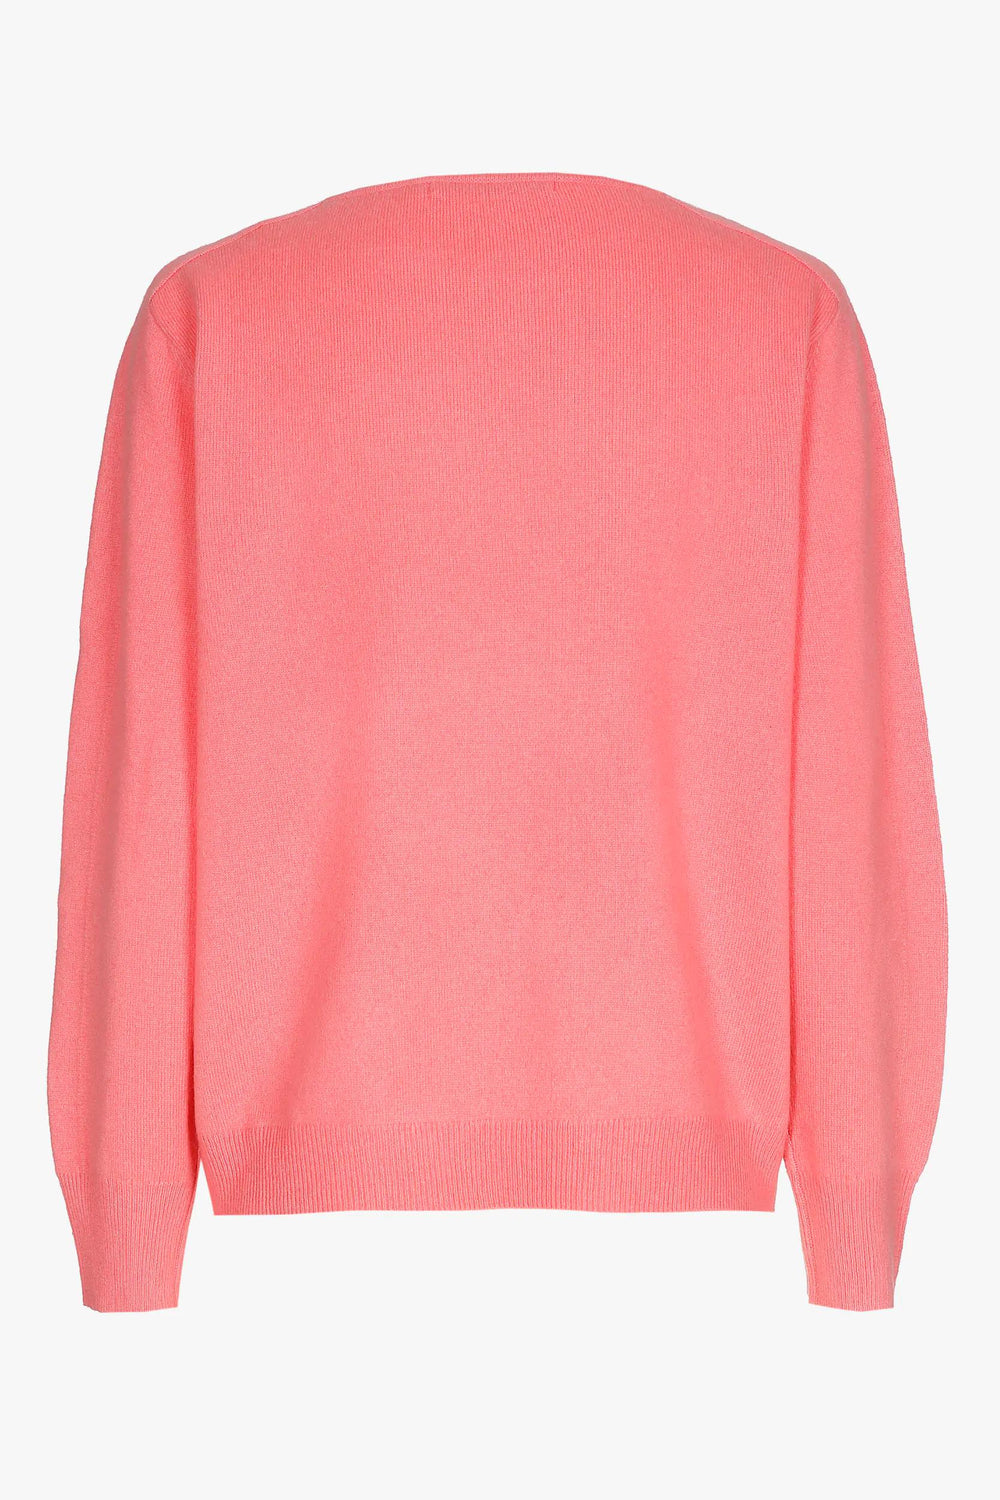 roze soepelvallende trui van kasjmier-xandres-